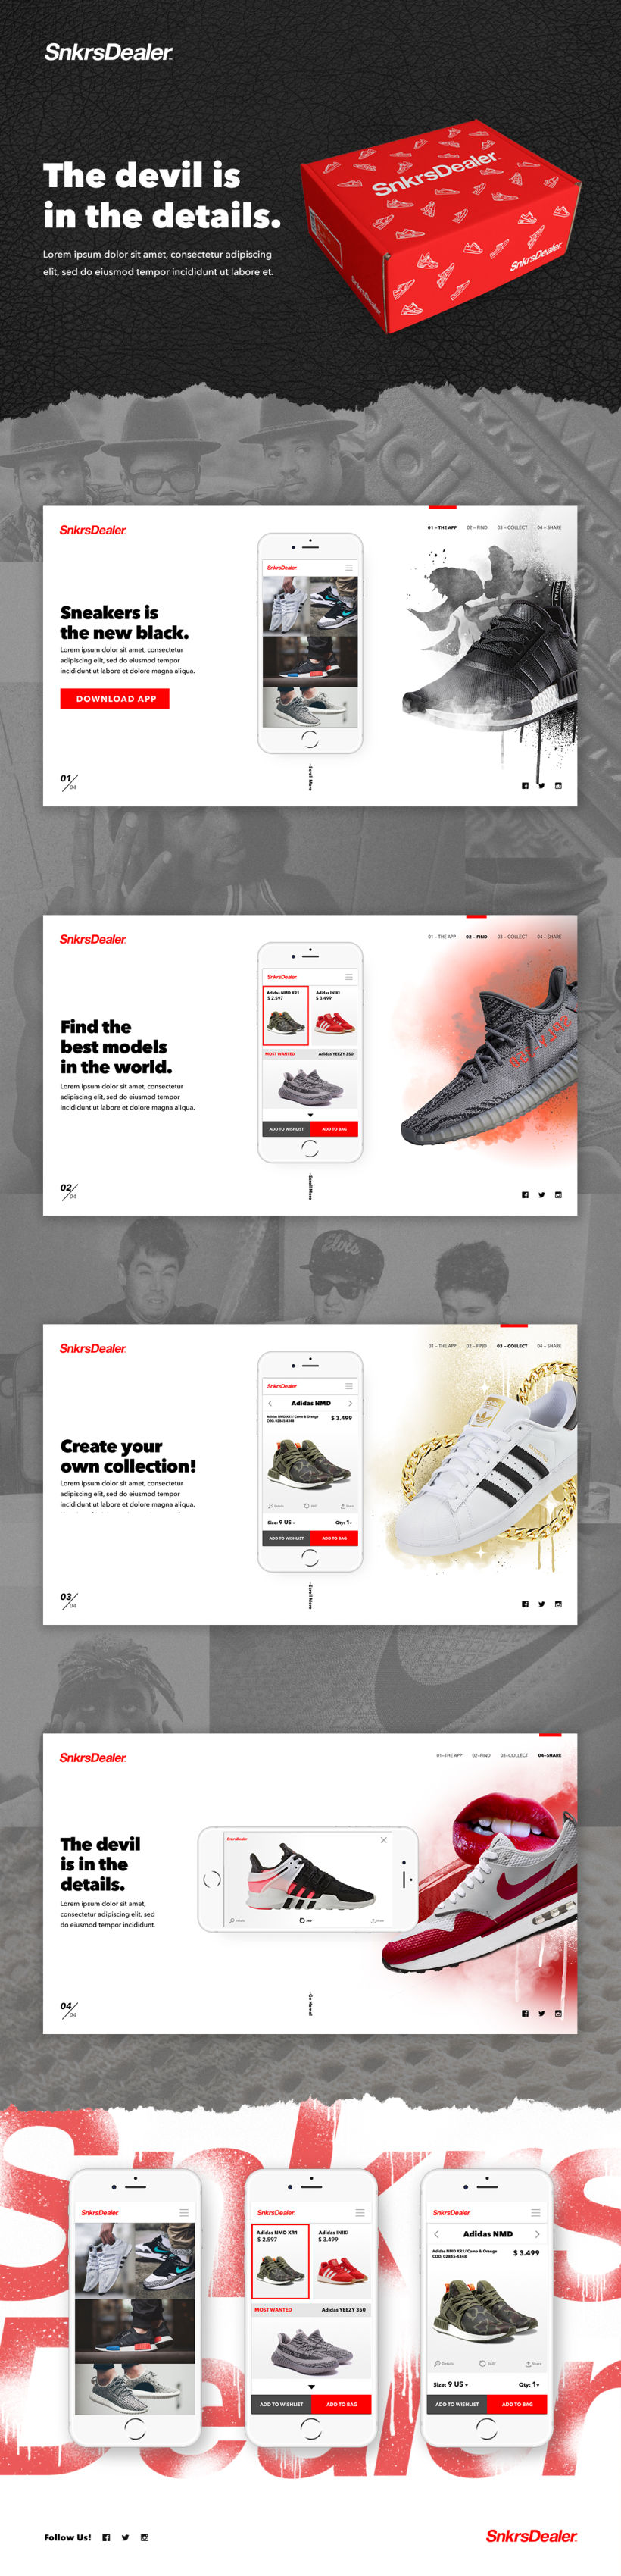 Proyecto Sneaker Dealer: Dirección de arte digital -1